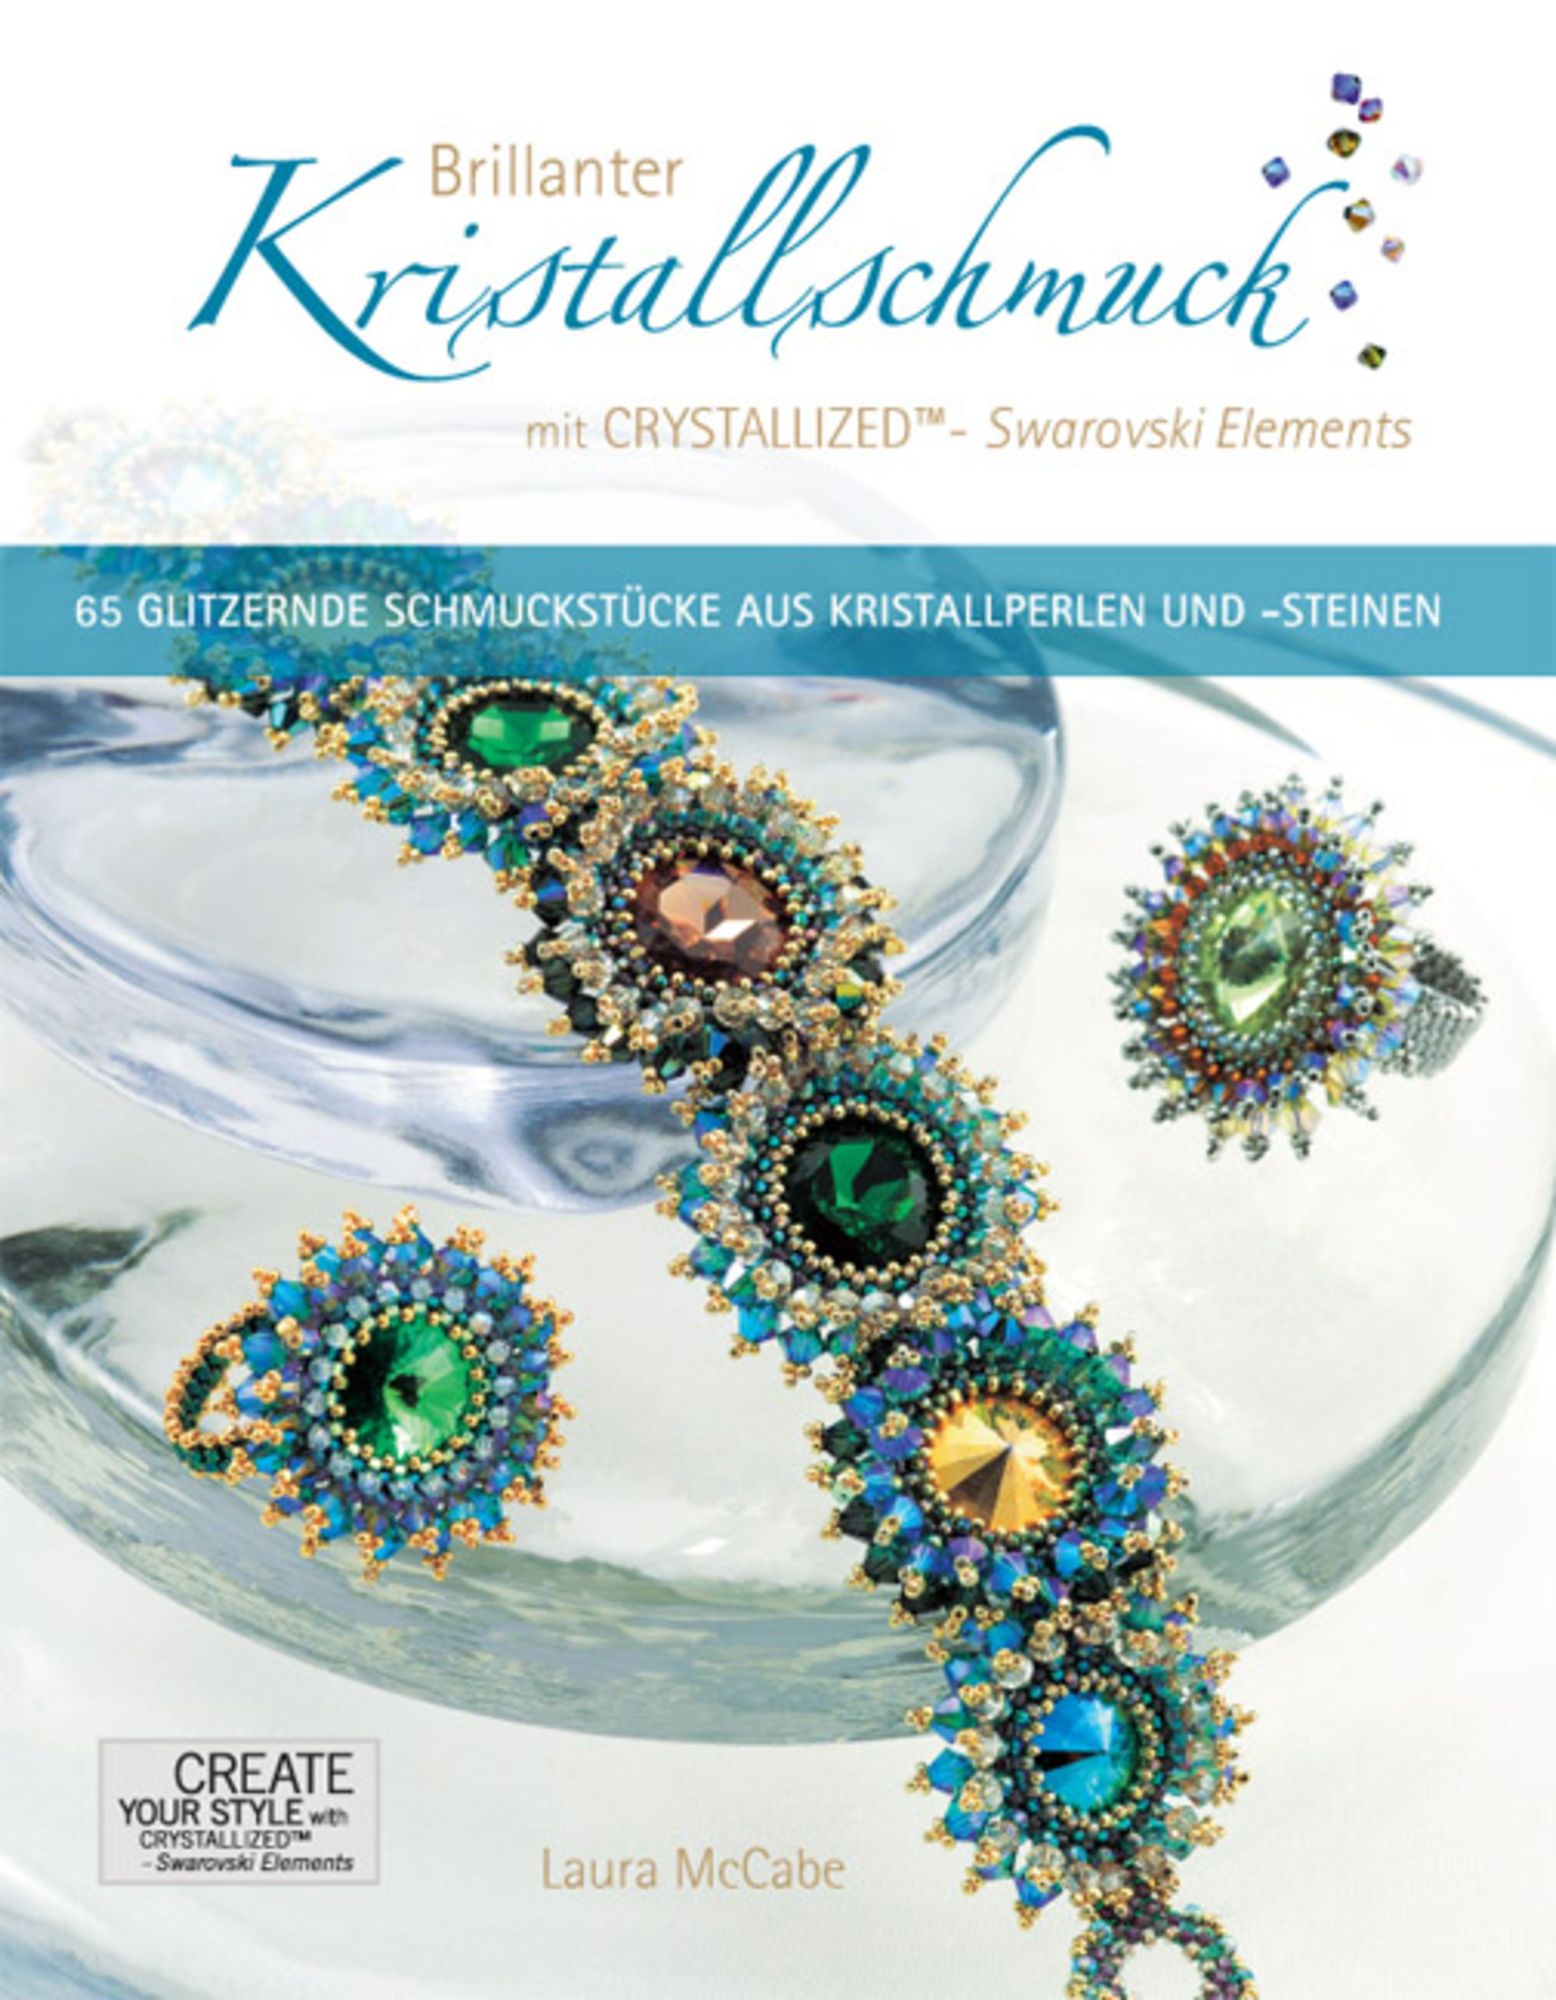 Brillanter Kristallschmuck mit CRYSTALLIZED™ - - Elements\' \'Laura \'978-3-940577-00-9\' - Buch McCabe\' von Swarovski